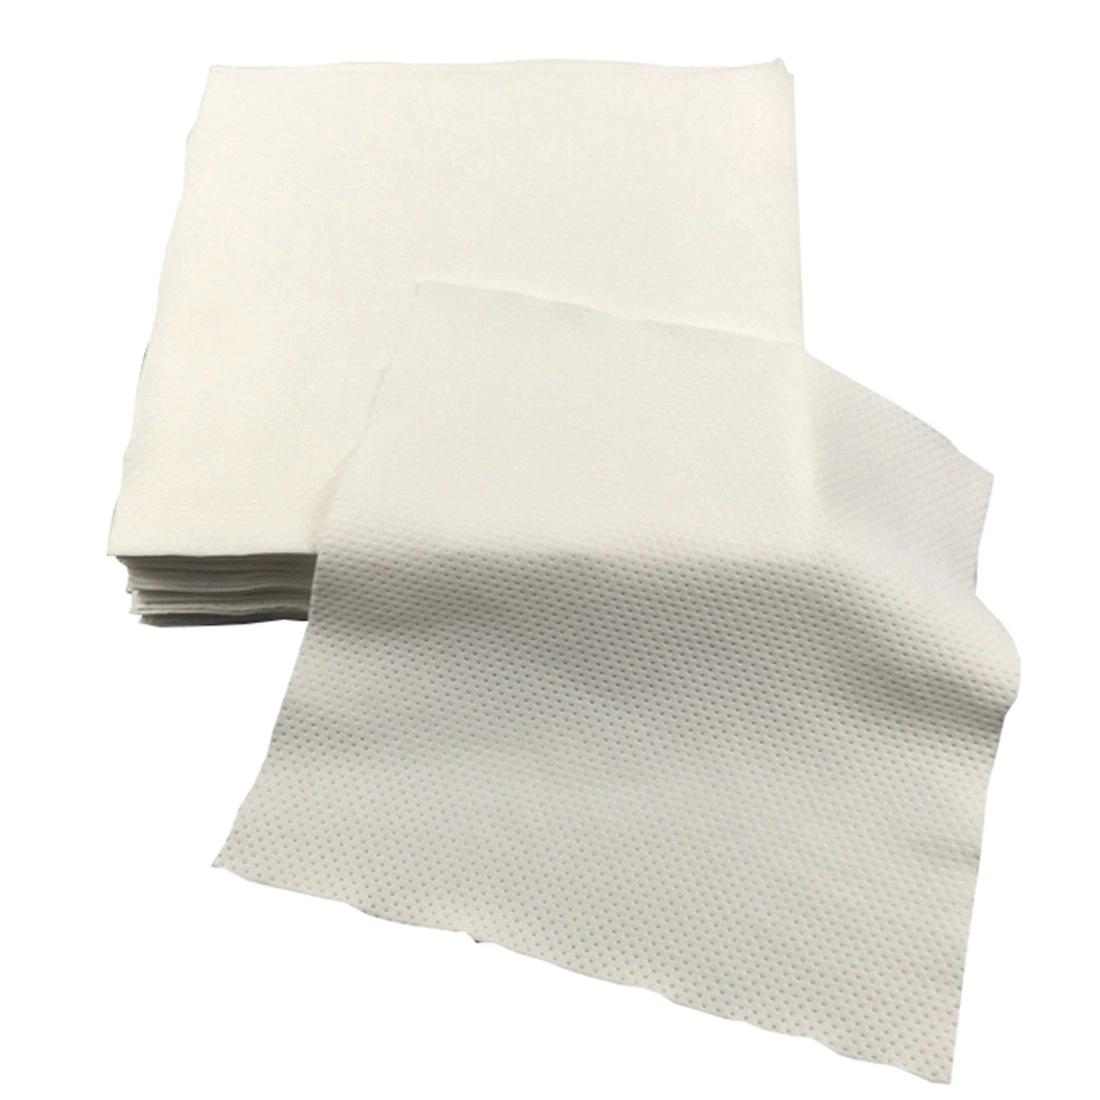 Un super absorbants 240GSM 2ply non pelucheux Pharmaceutical lingettes pour salle blanche de Polyester essuie-glace pour salle blanche